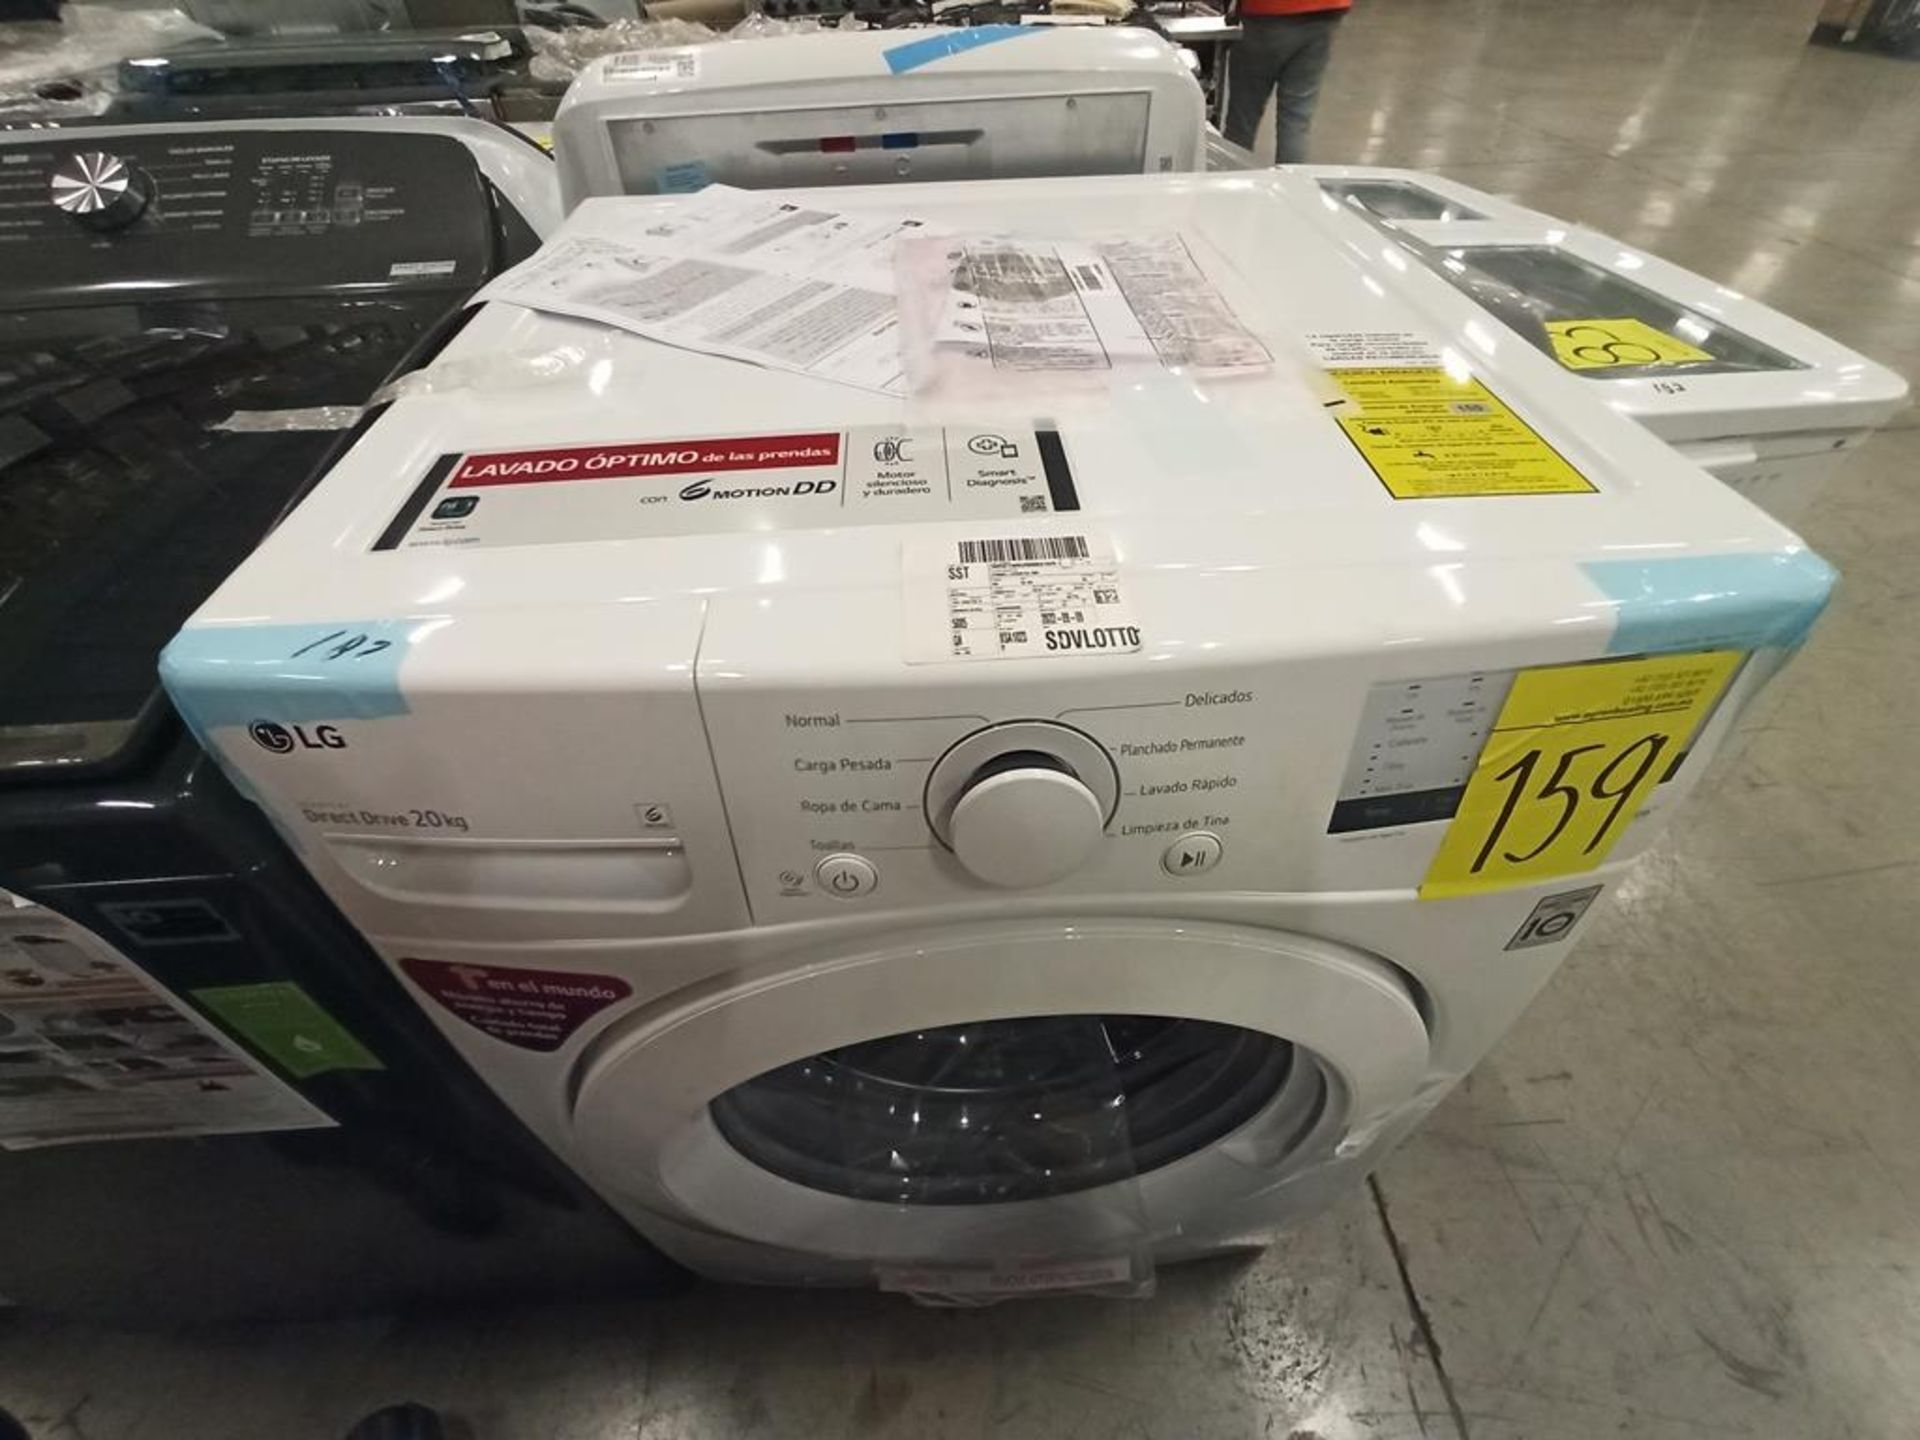 Lote de 2 lavadoras contiene: 1 lavadora de 24kg Marca WHIRPOOL, Modelo 8MWTWLA41WJG0, SerieHLB3888 - Image 10 of 18